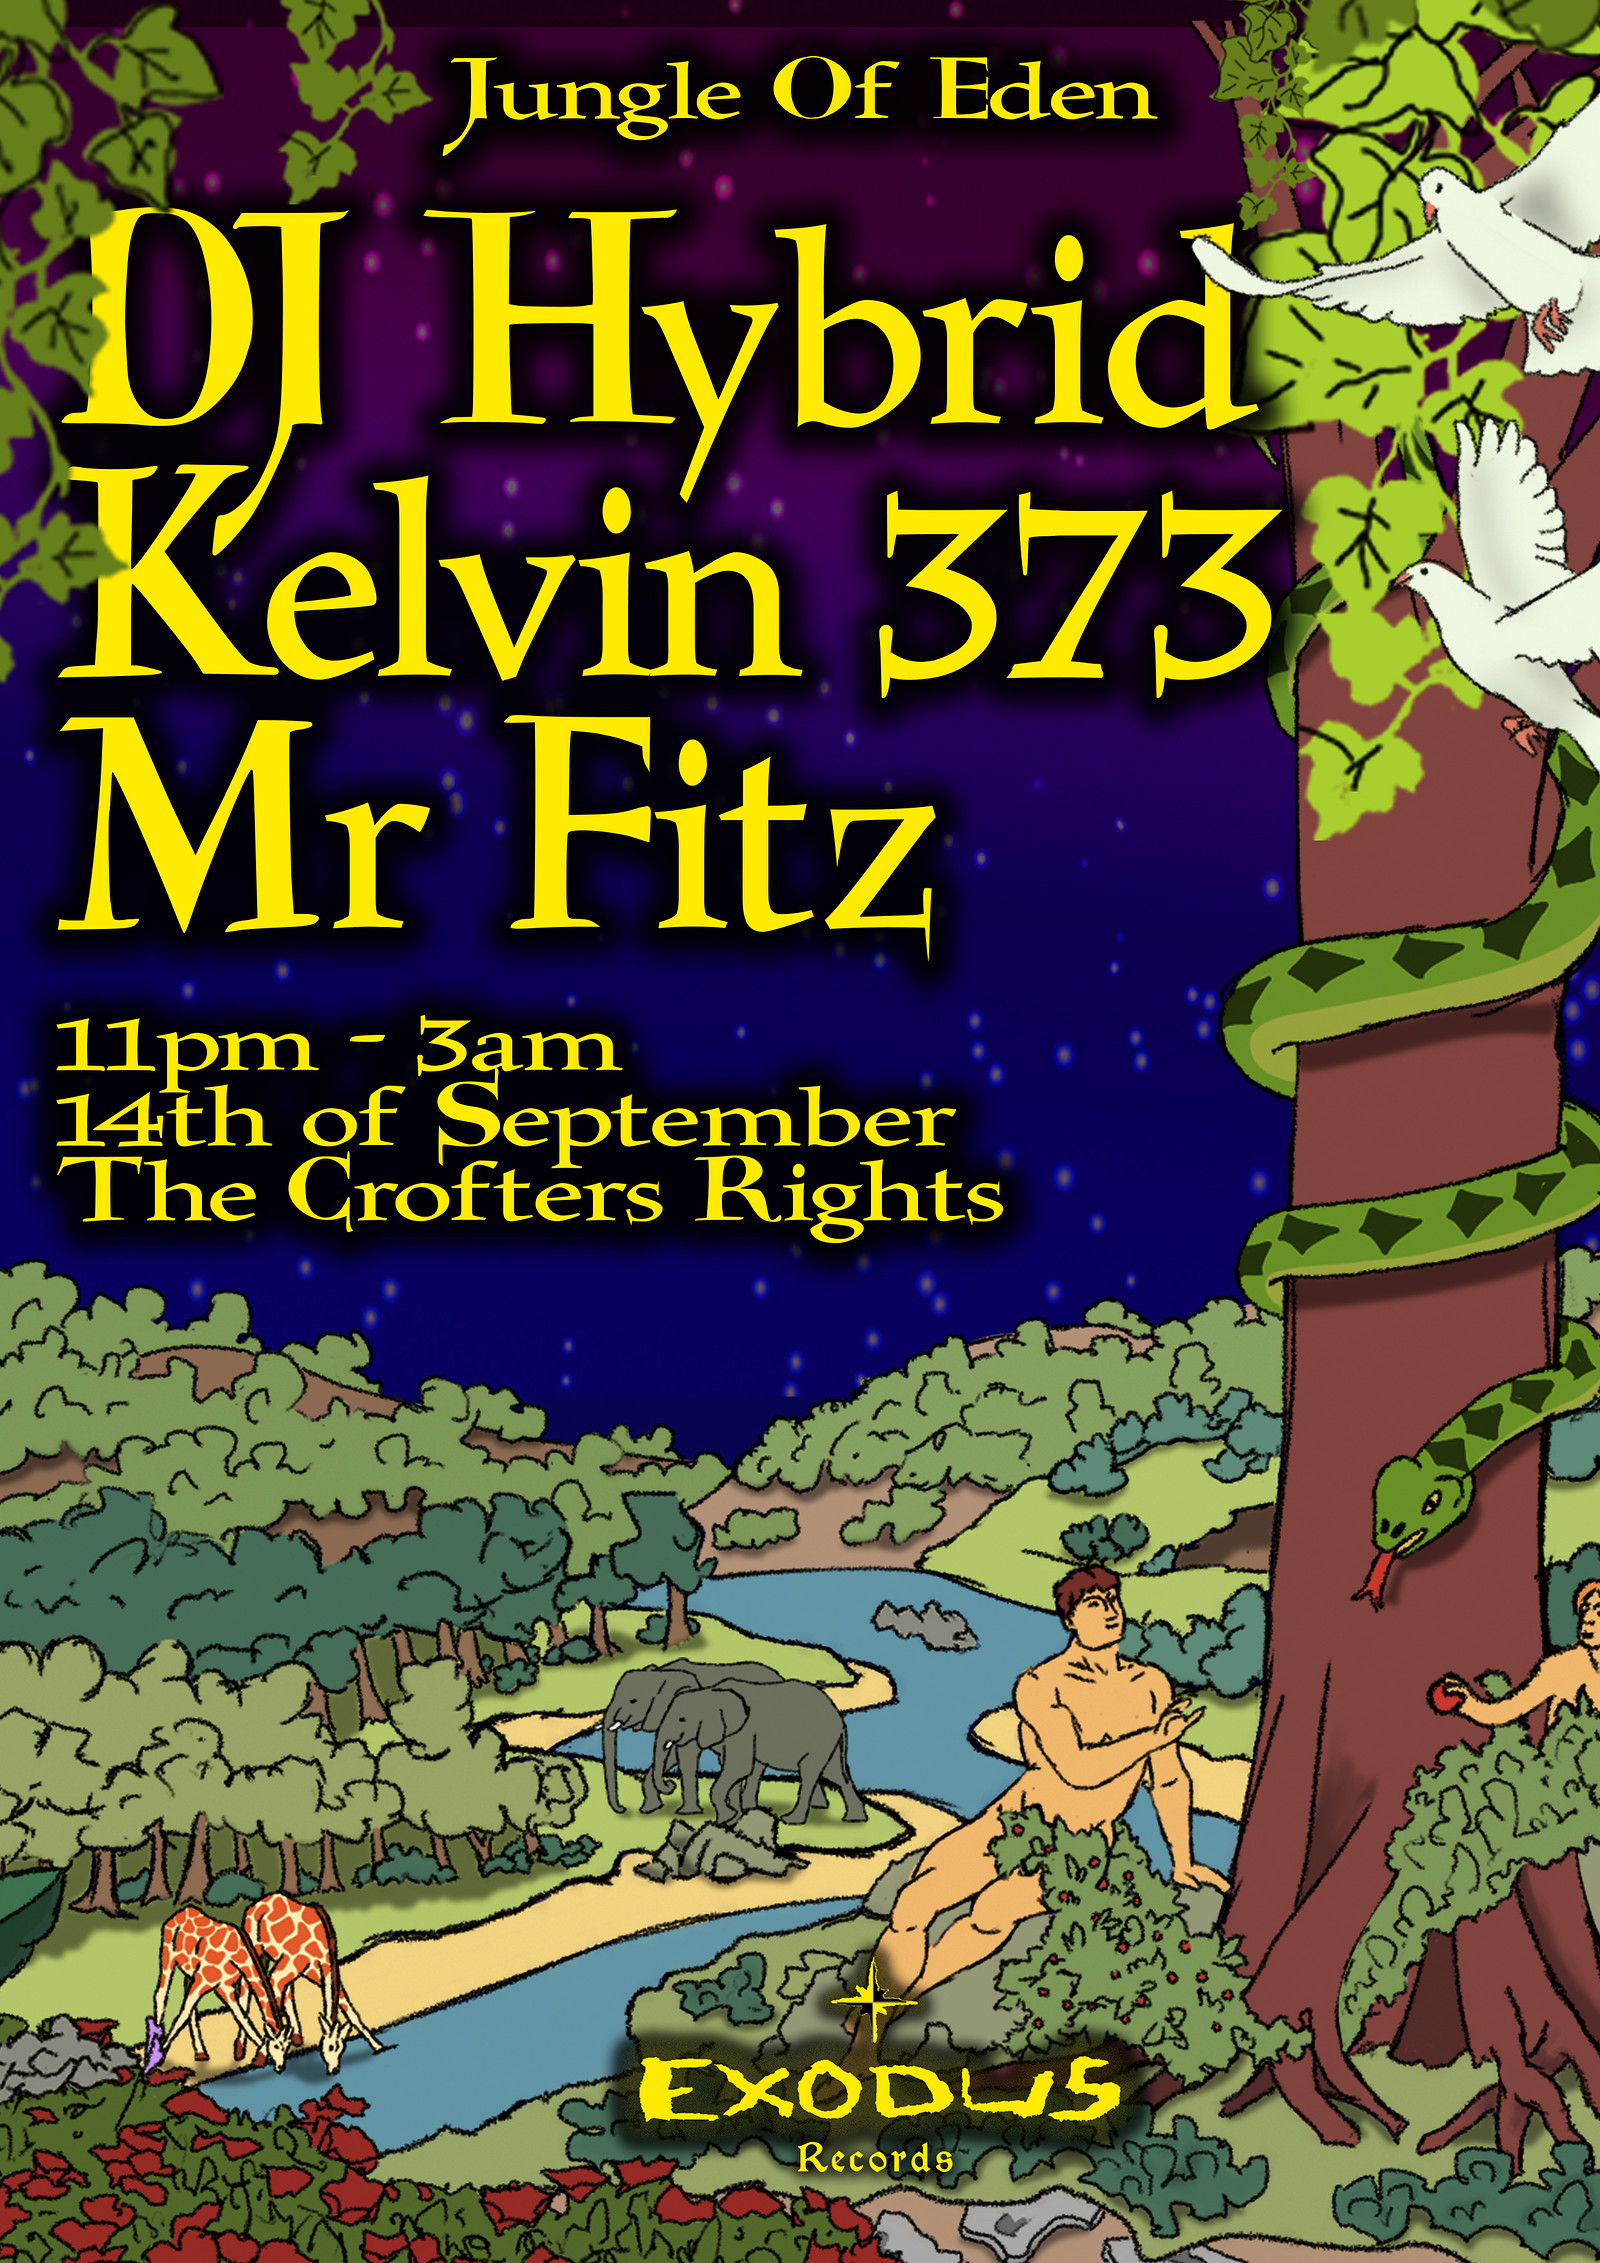 Jungle Of Eden - DJ Hybrid, Kelvin 373 & Mr Fitz at Crofters Rights